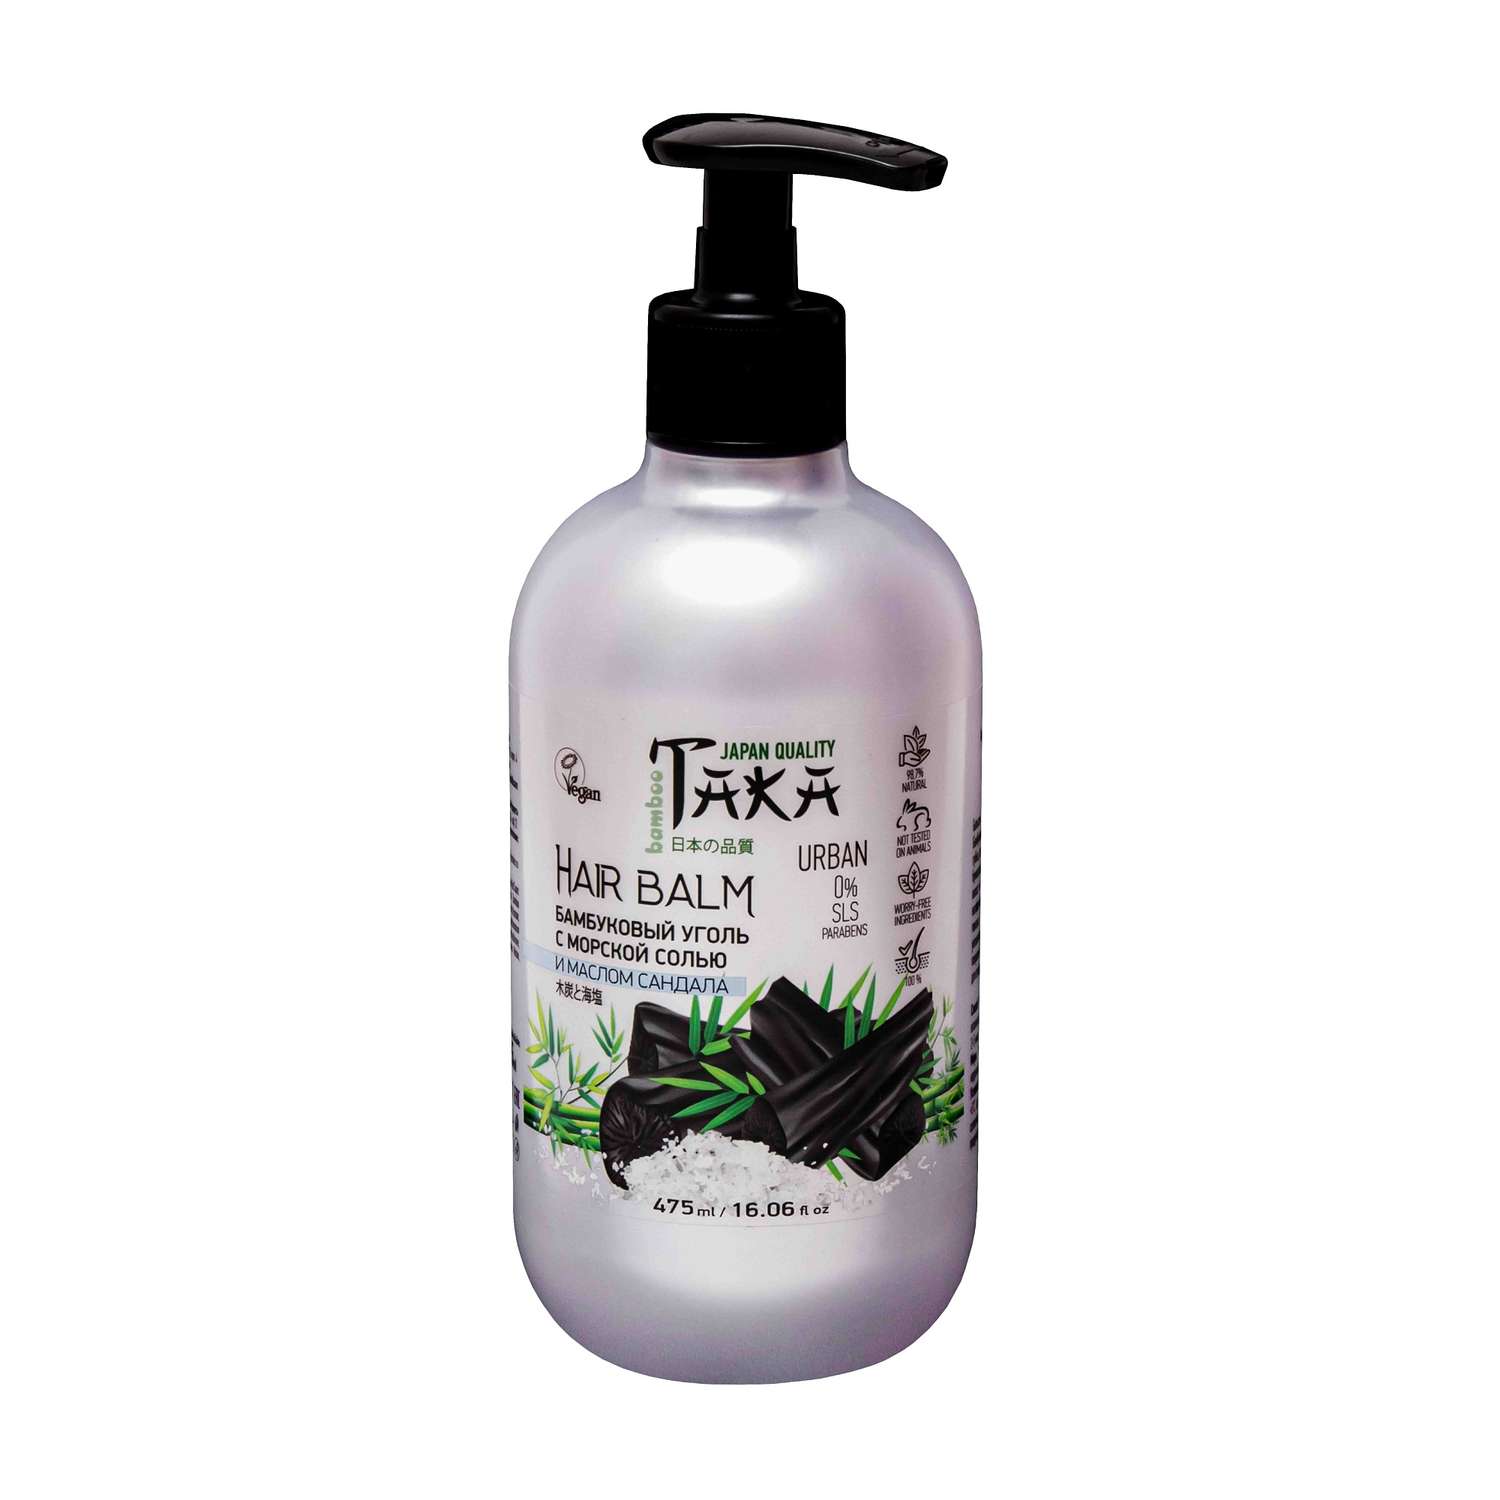 Бальзам для волос TAKA Health эко-серия бамбуковый уголь с морской солью и маслом сандала 475 мл - фото 1